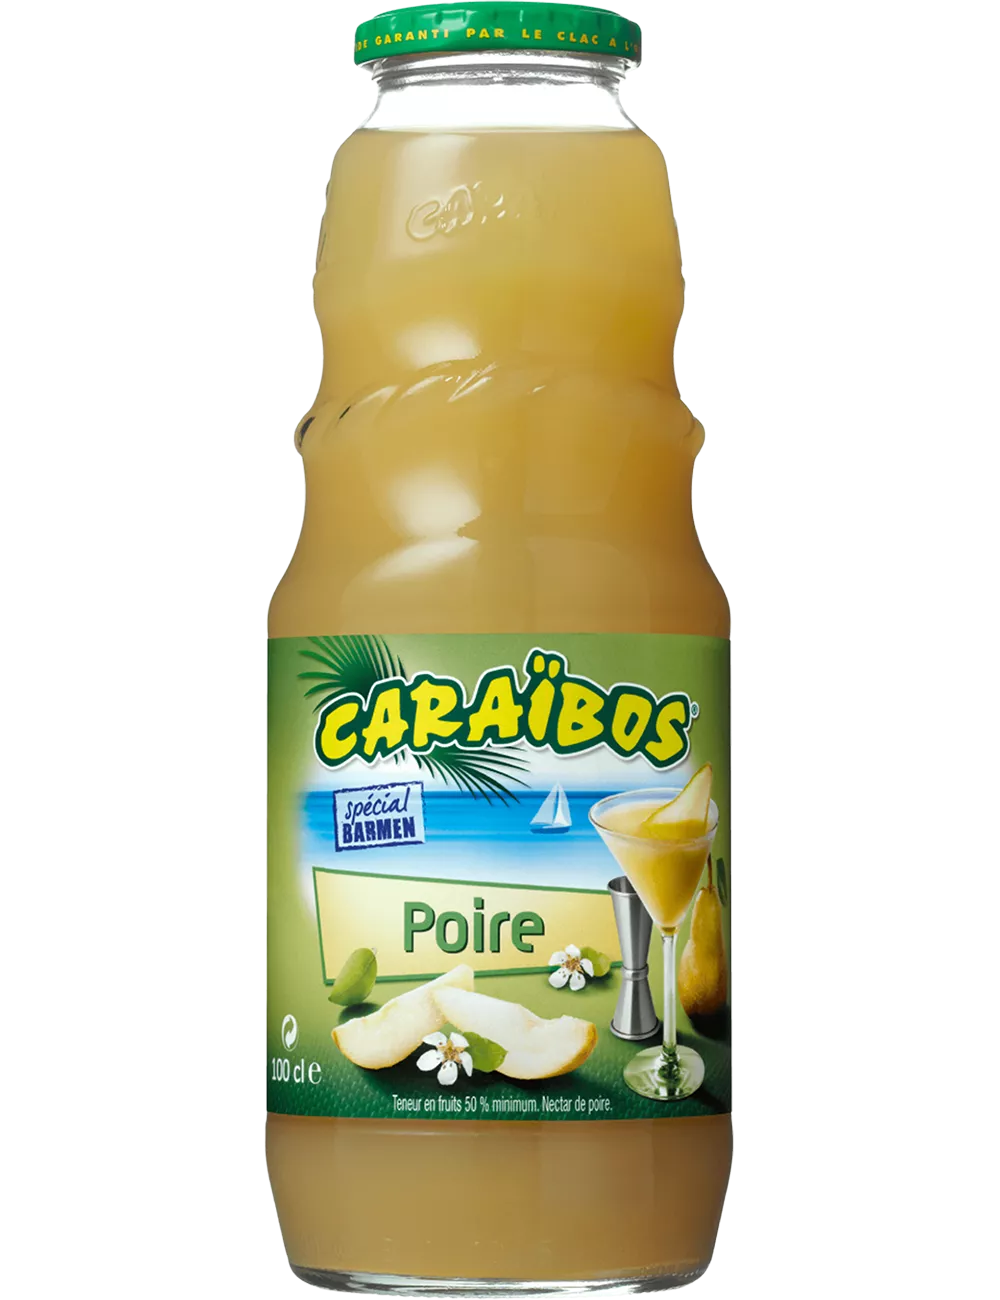 Nectar de Poire - Caraïbos